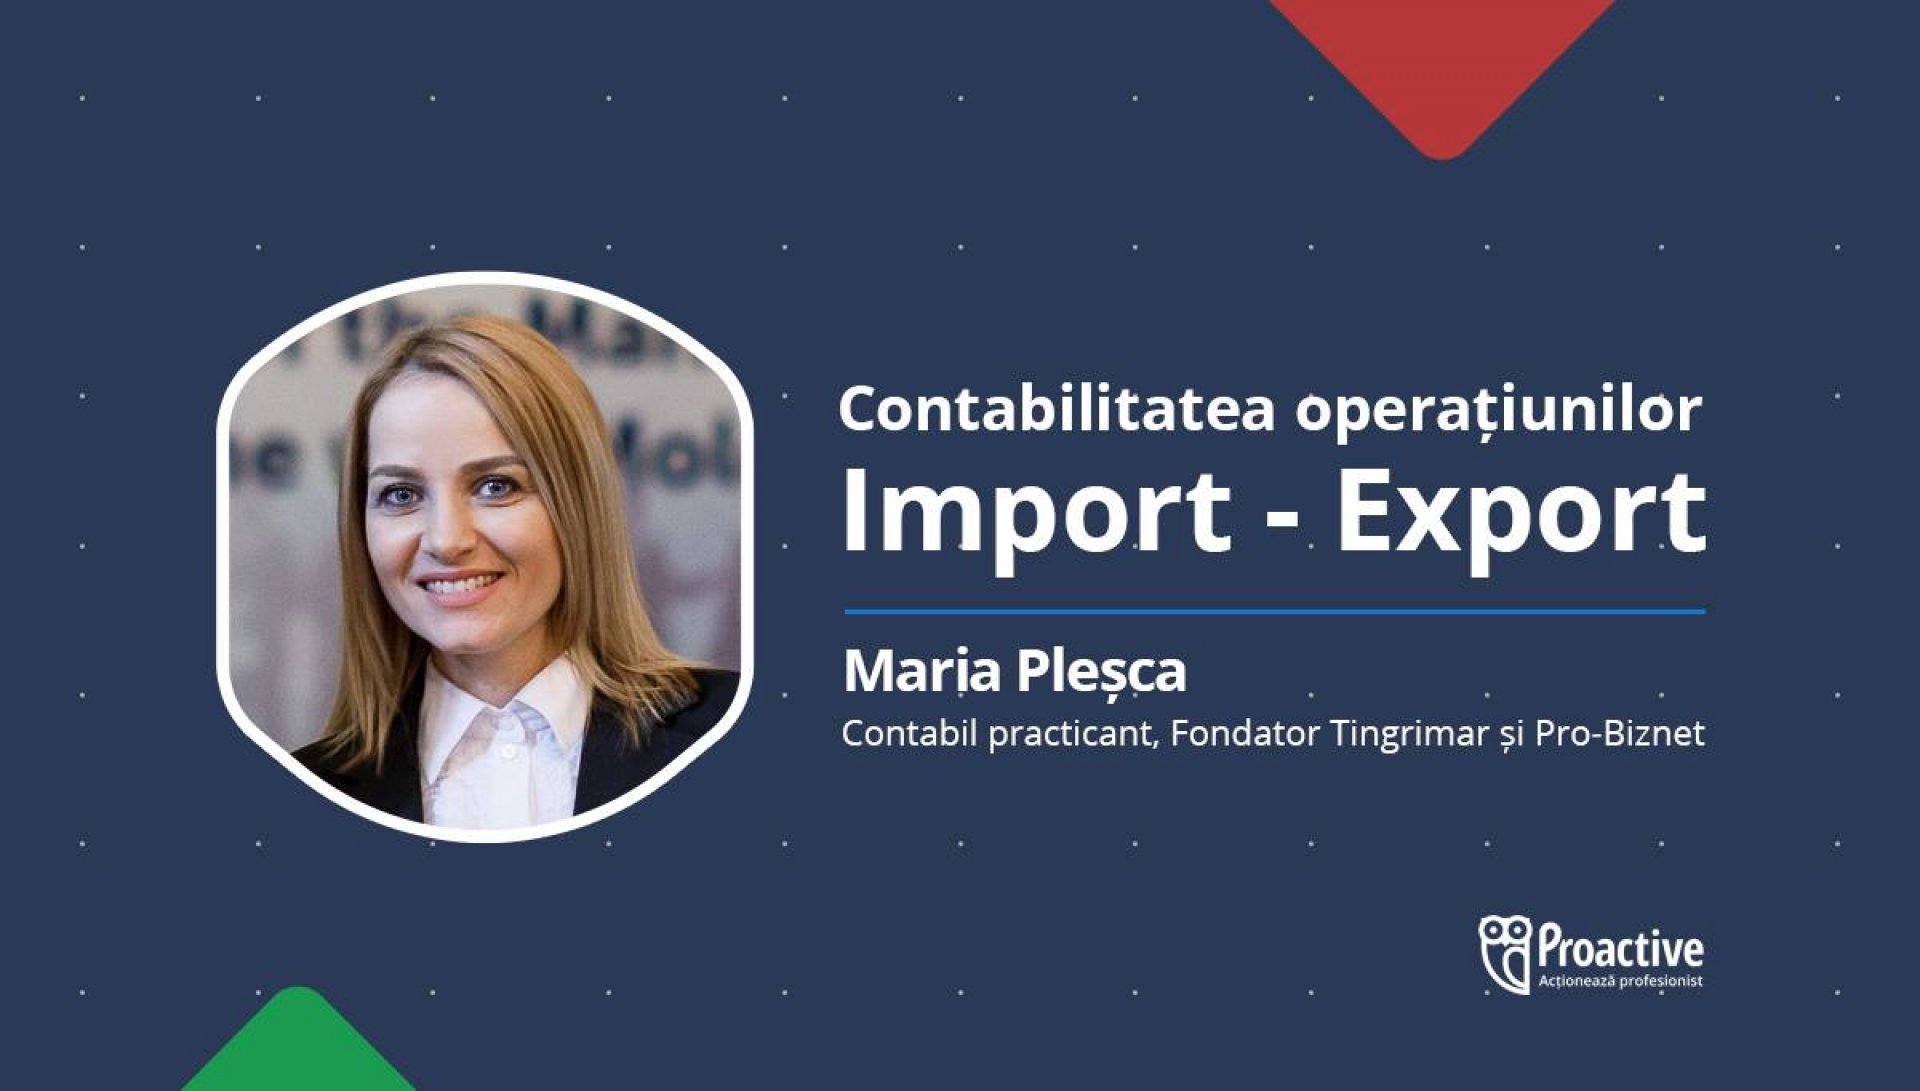 Contabilitatea operatiunilor Import-Export